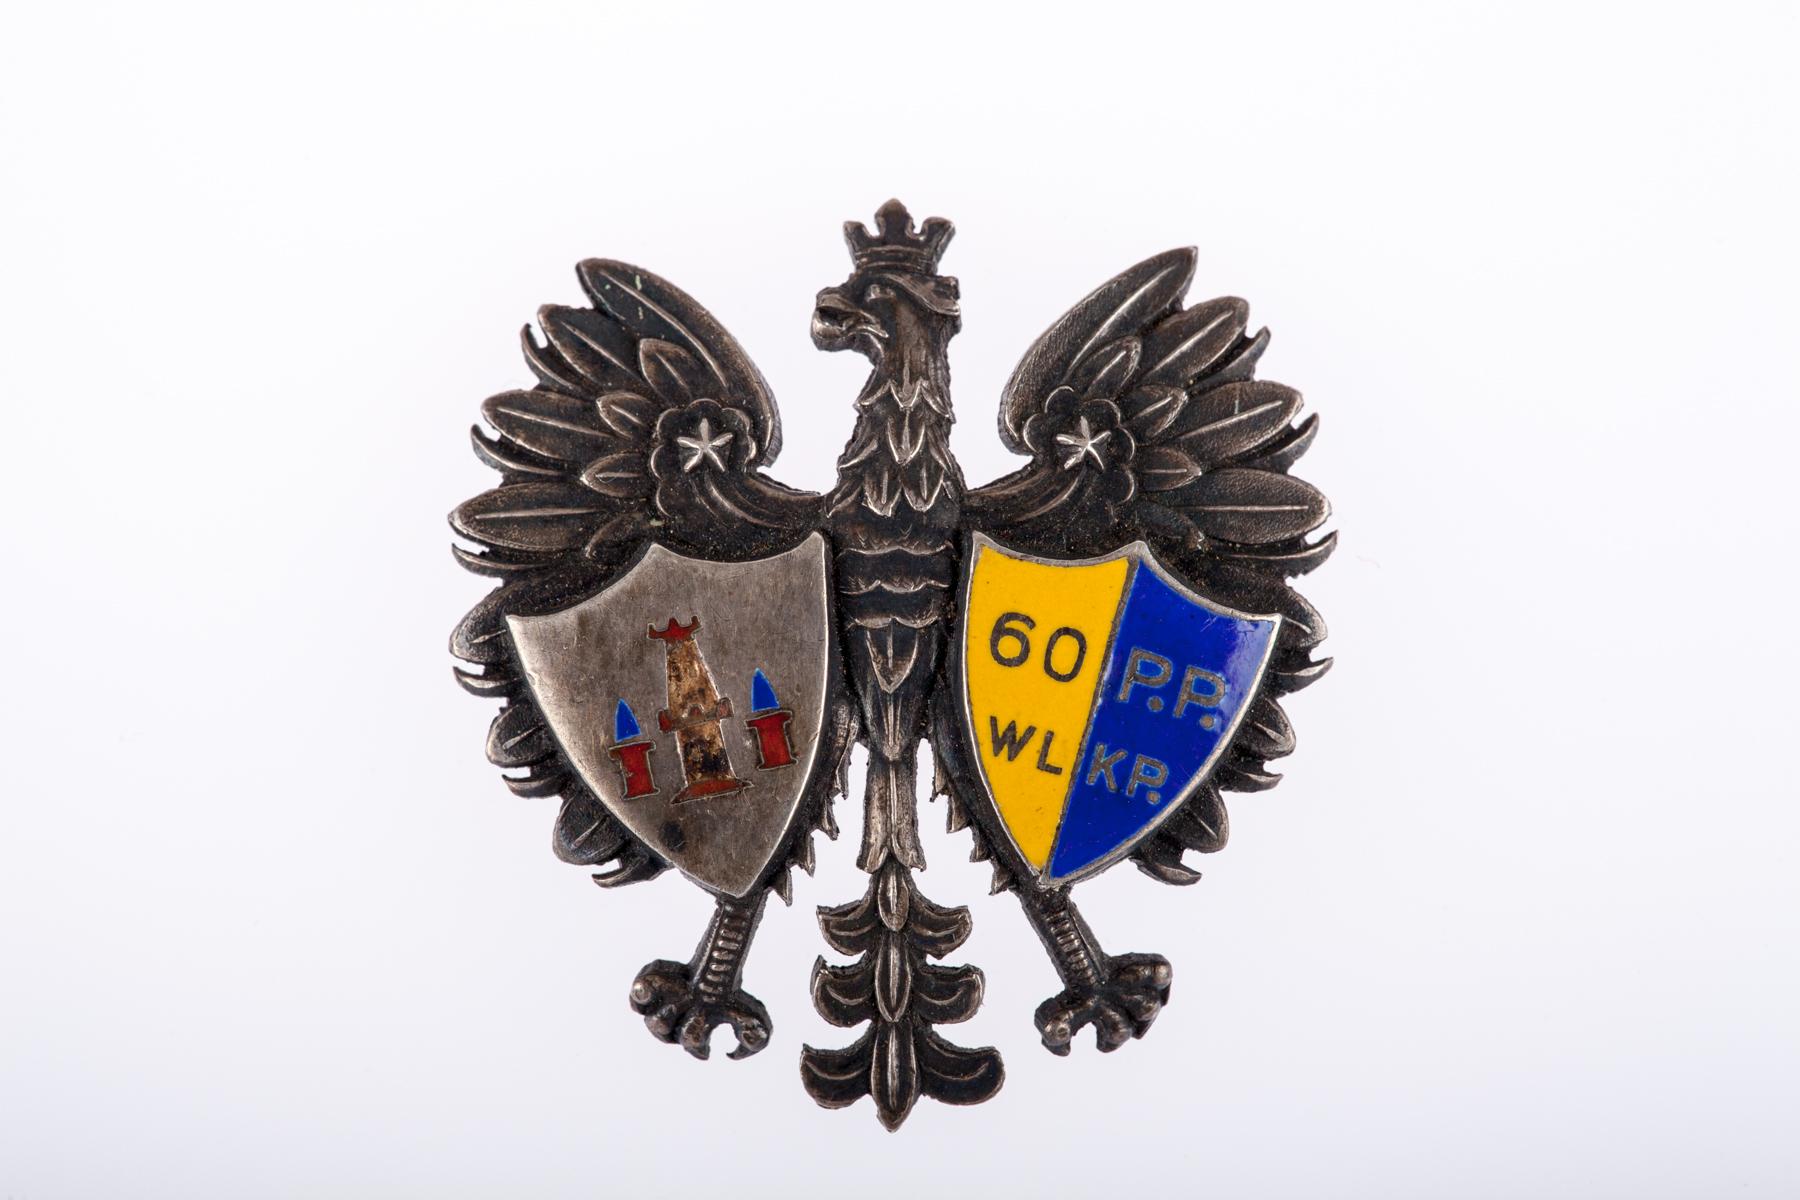 Odznaka 60. Pułku Piechoty Wielkopolskiej